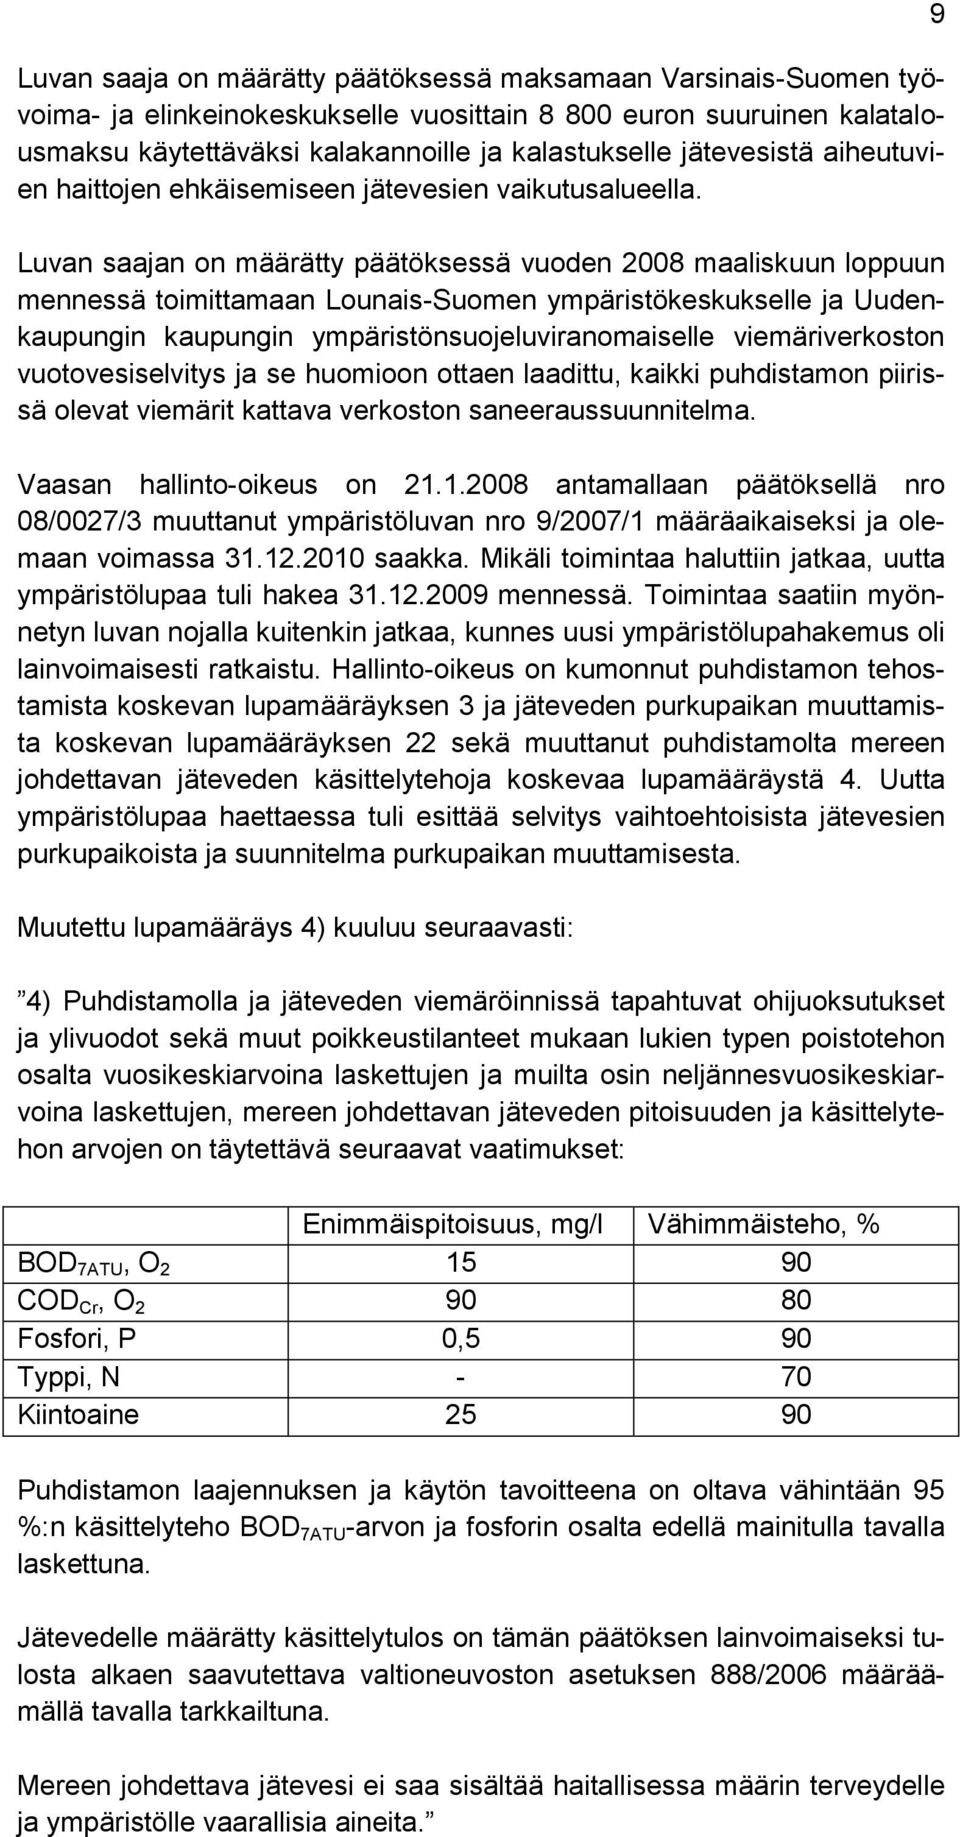 Luvan saajan on määrätty päätöksessä vuoden 2008 maaliskuun loppuun mennessä toimittamaan Lounais-Suomen ympäristökeskukselle ja Uudenkaupungin kaupungin ympäristönsuojeluviranomaiselle